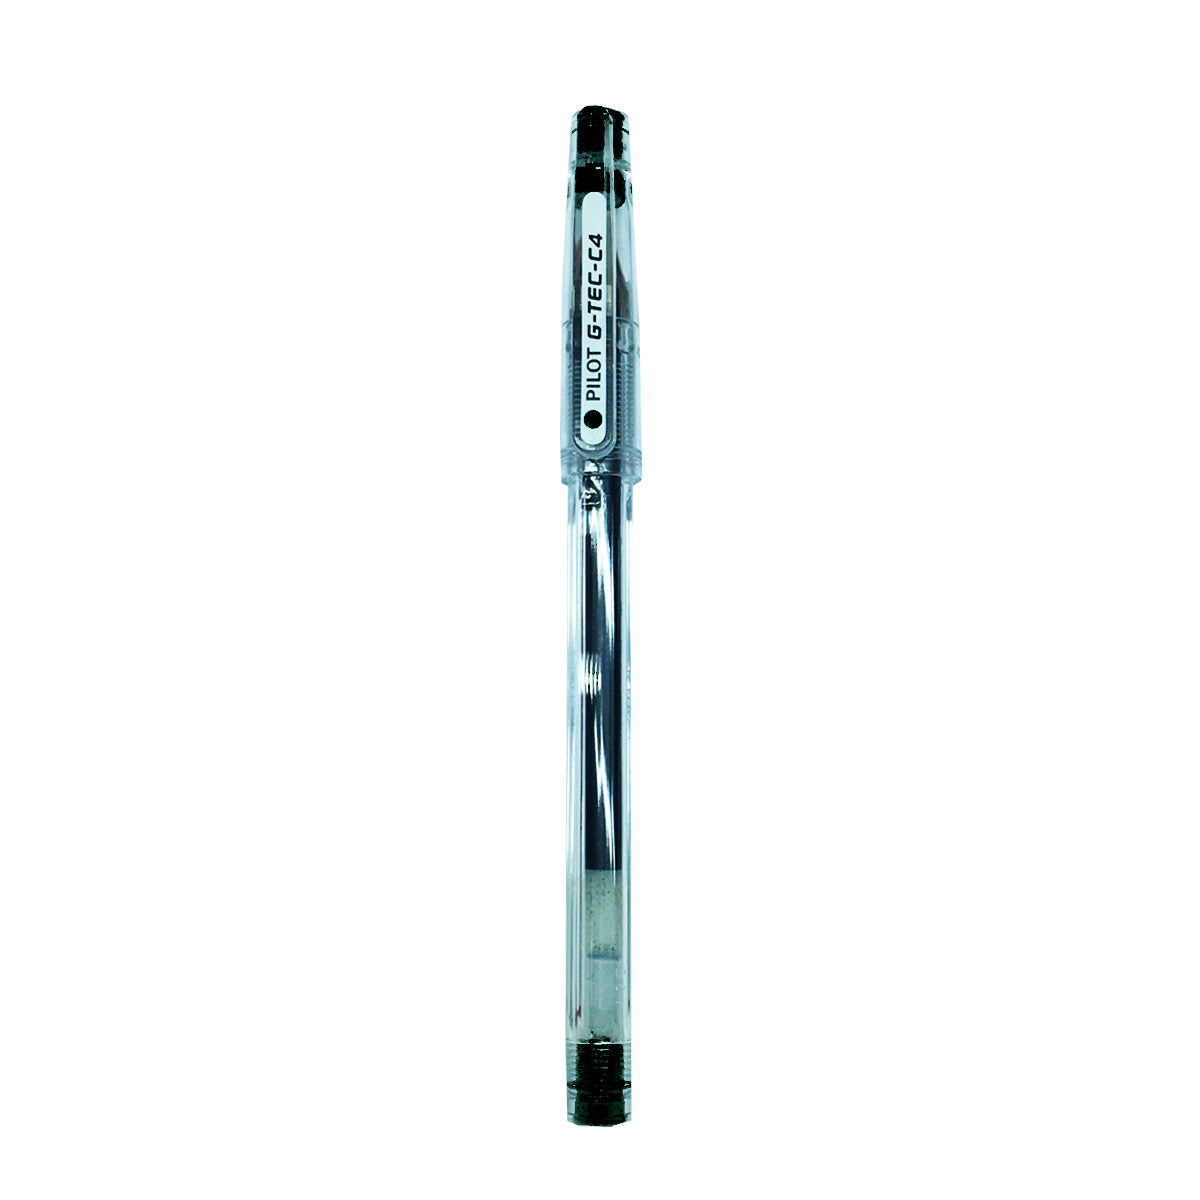 Shop Pilot GTEC C4 Gel Black Pen online in Abu Dhabi, UAE